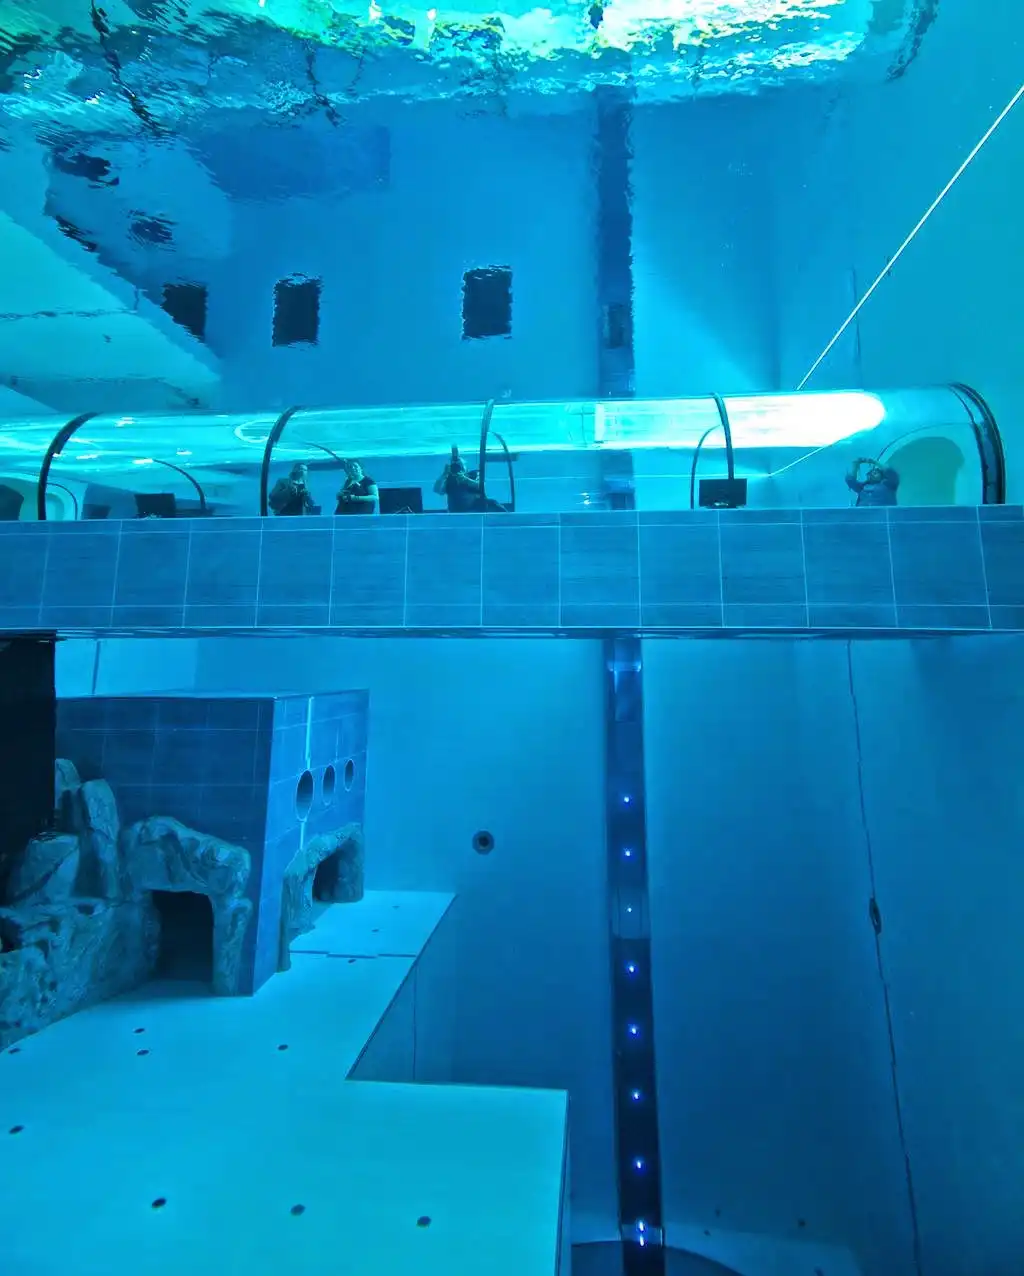 самый глубокий бассейн в мире 40 метров